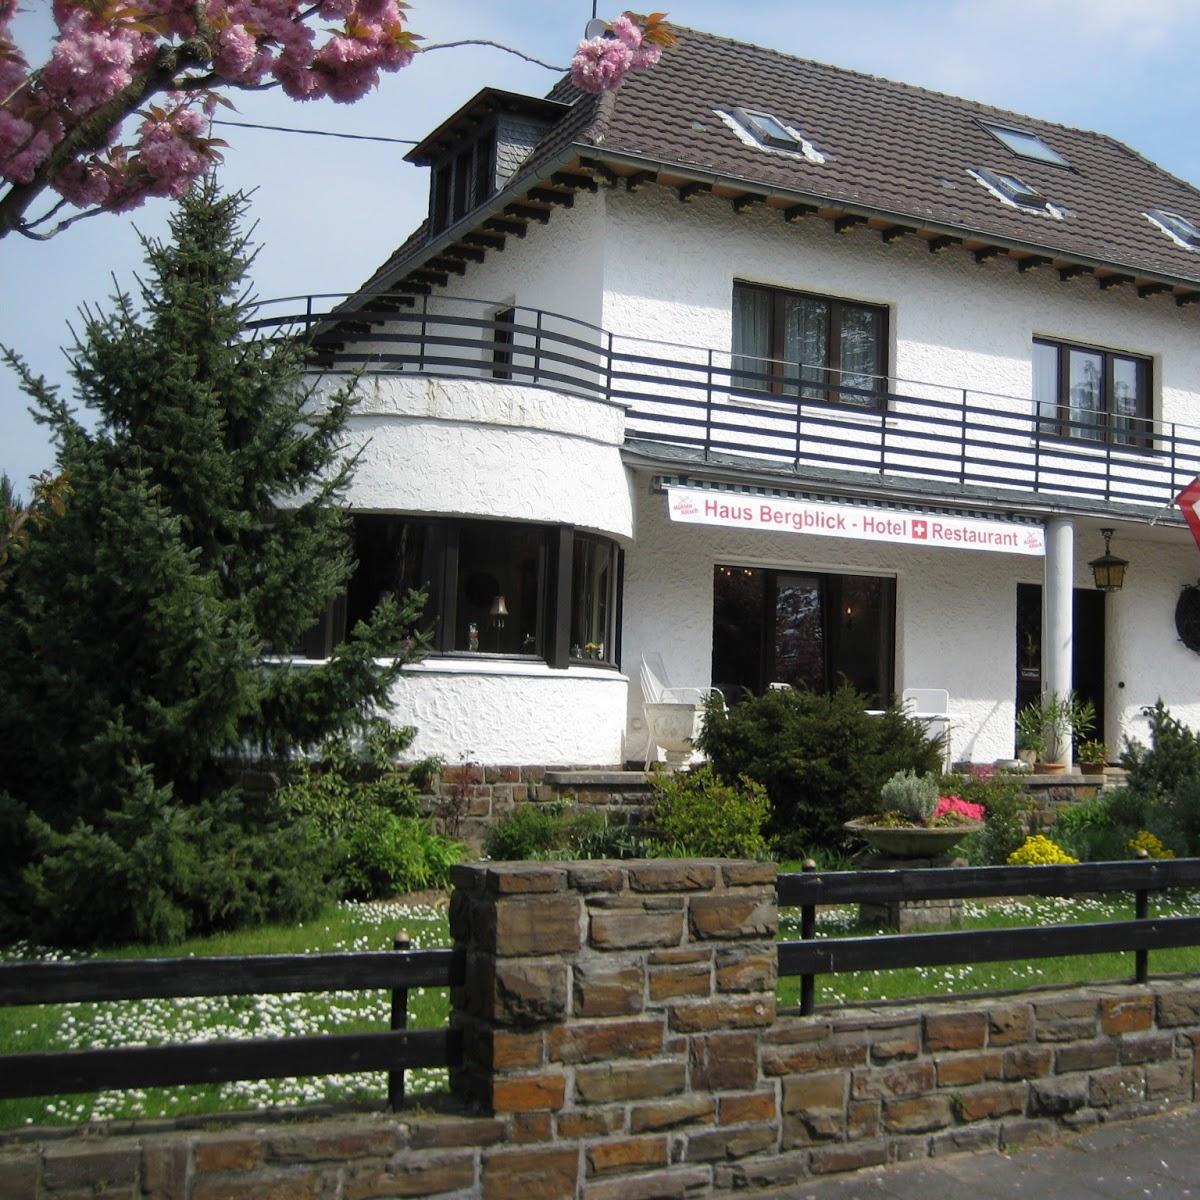 Restaurant "Haus Bergblick Hotel & Restaurant" in  Rheinbreitbach